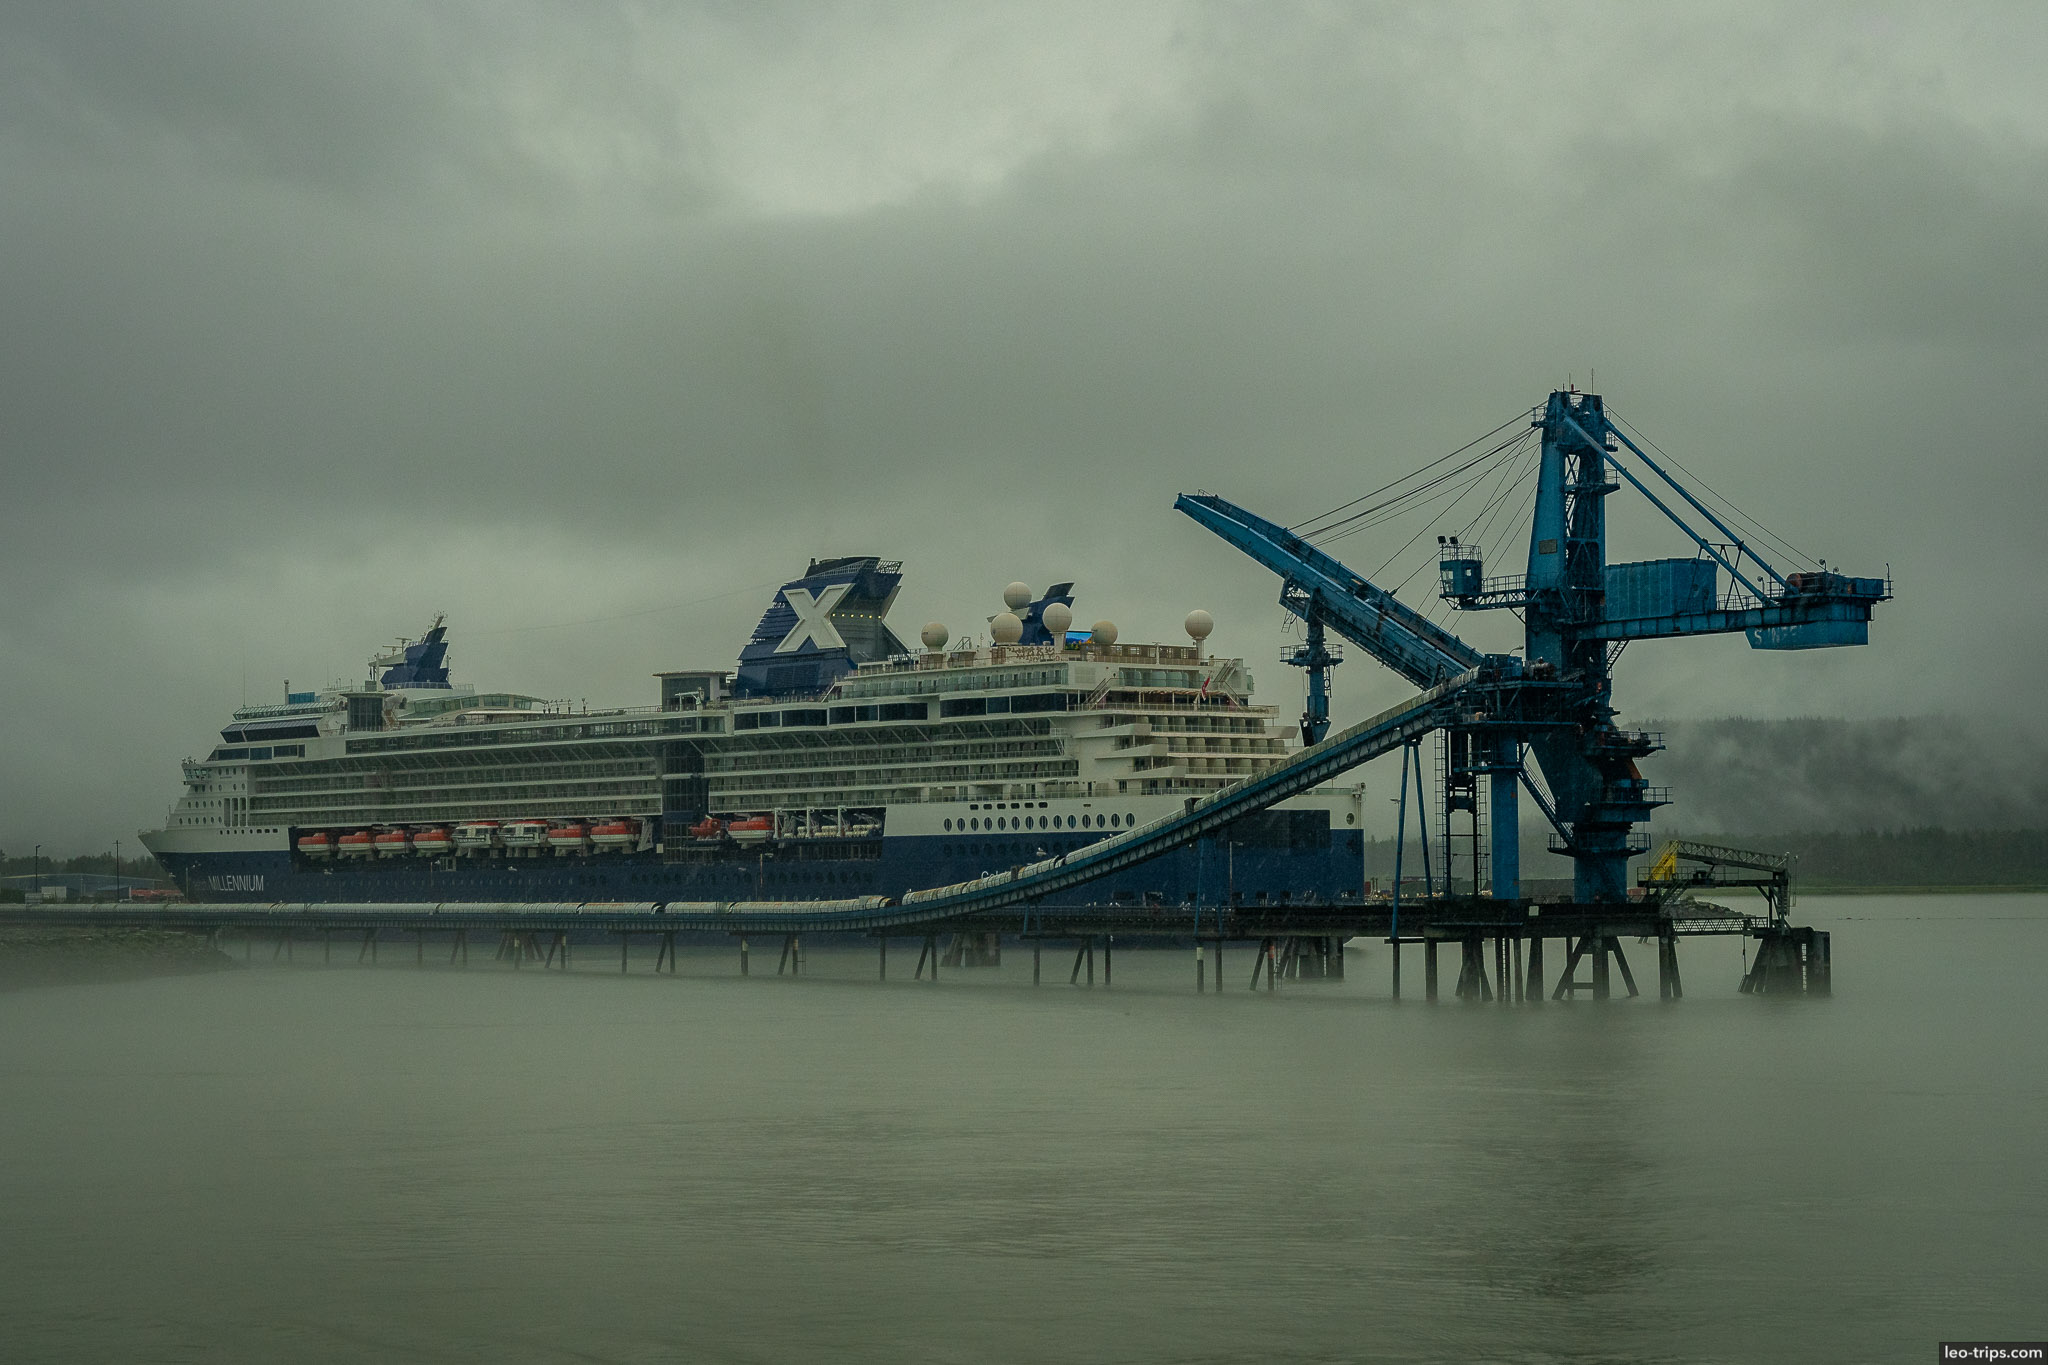 Coal unloading crane and cruise ship resurrection bay